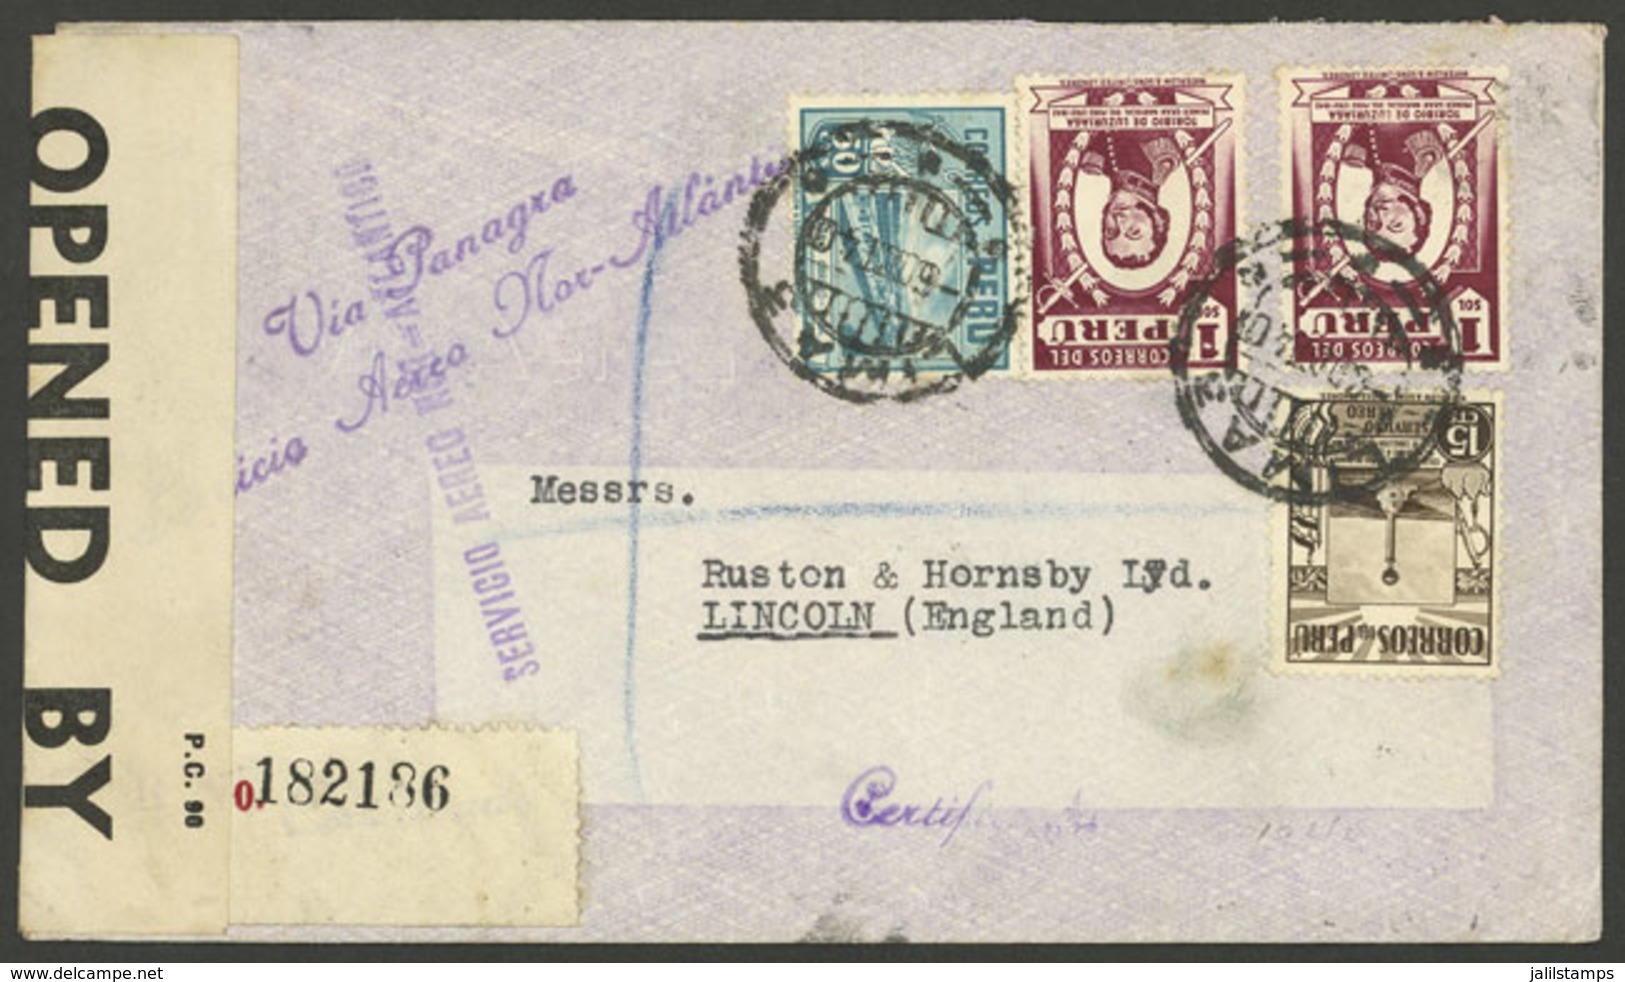 PERU: 6/OC/1940 Lima - England, Registered Airmail Cover With Violet Marks "SERVICIO AEREO NOR-ATLANTICO" Of PANAGRA, Br - Peru